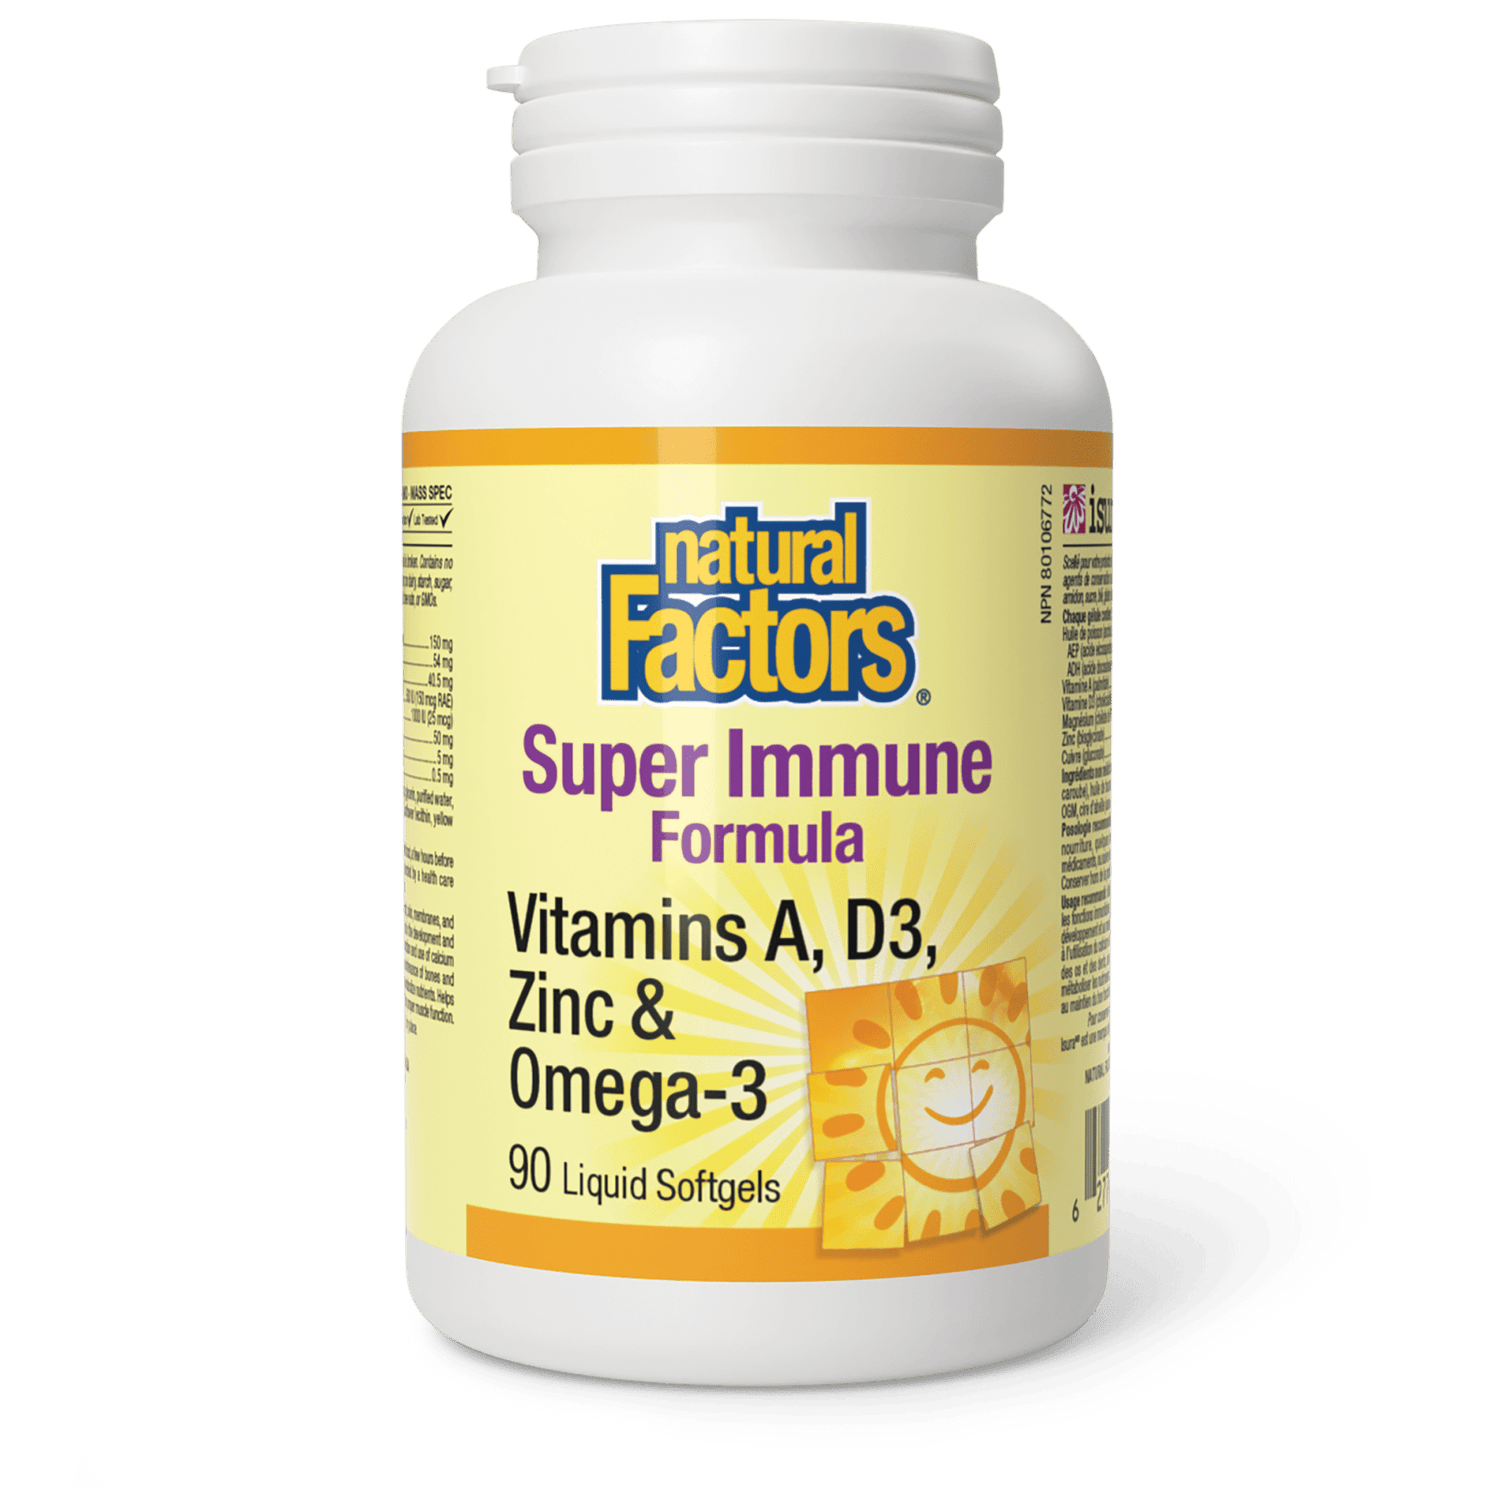 Super Immune Formula, Natural Factors|v|image|1065